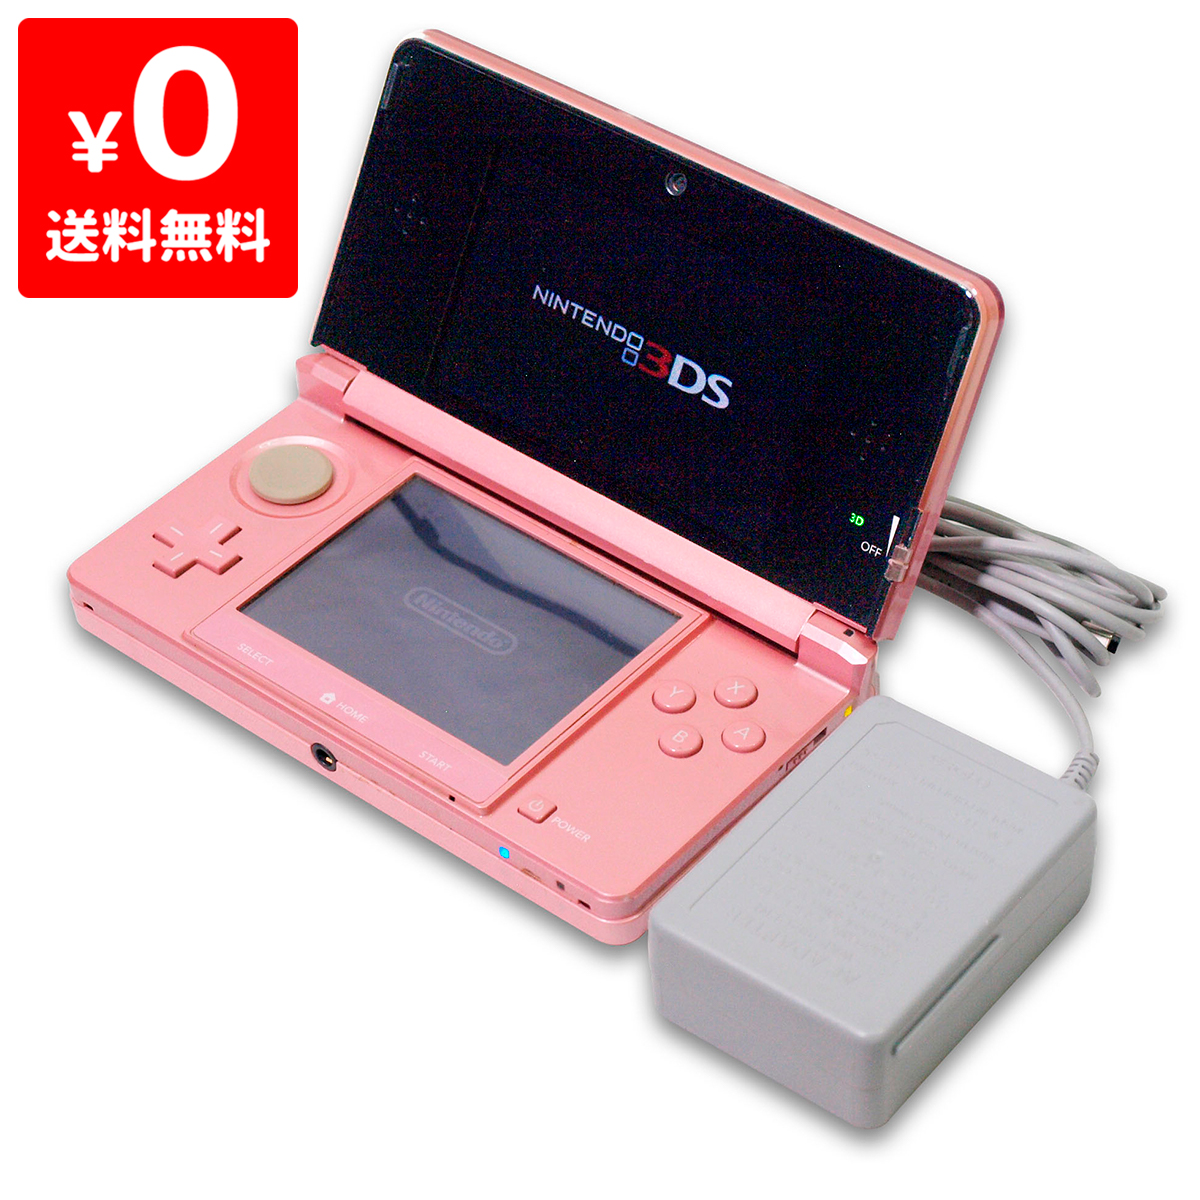 3DS ニンテンドー3DS ミスティピンクCTR-S-PAAA 本体 すぐ遊べるセット Nintendo 任天堂 ニンテンドー  4902370519129 【中古】 iimo リユース店